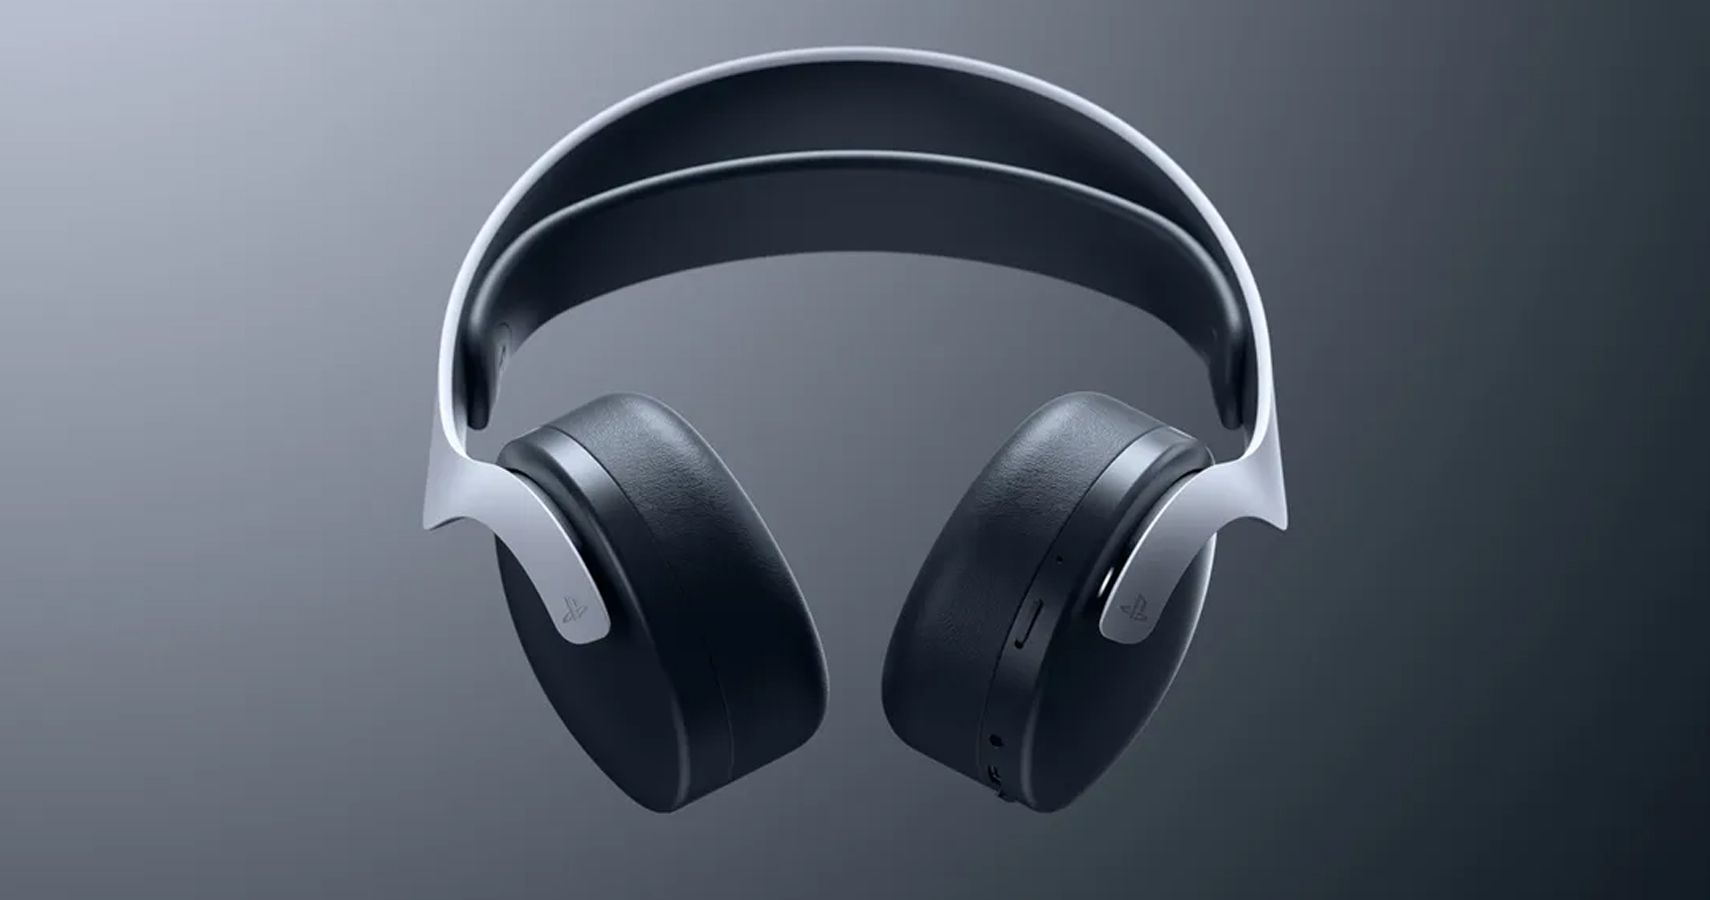 PS5 Tempest 3D AudioTech Compatibility